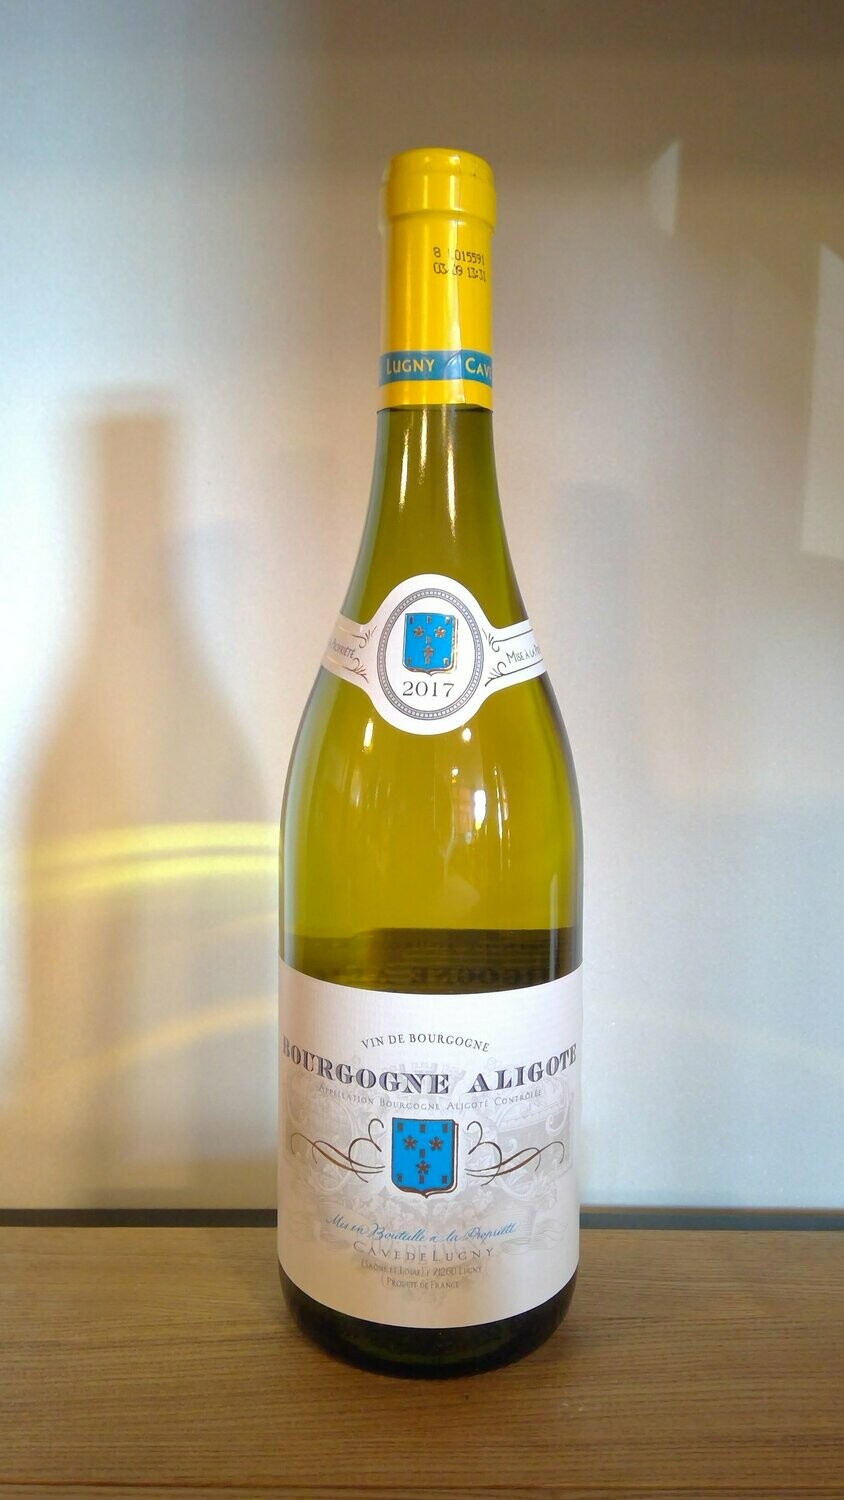 BOURGOGNE ALIGOTÉ | CAVE DE LUGNY "Bourgogne Aligoté"